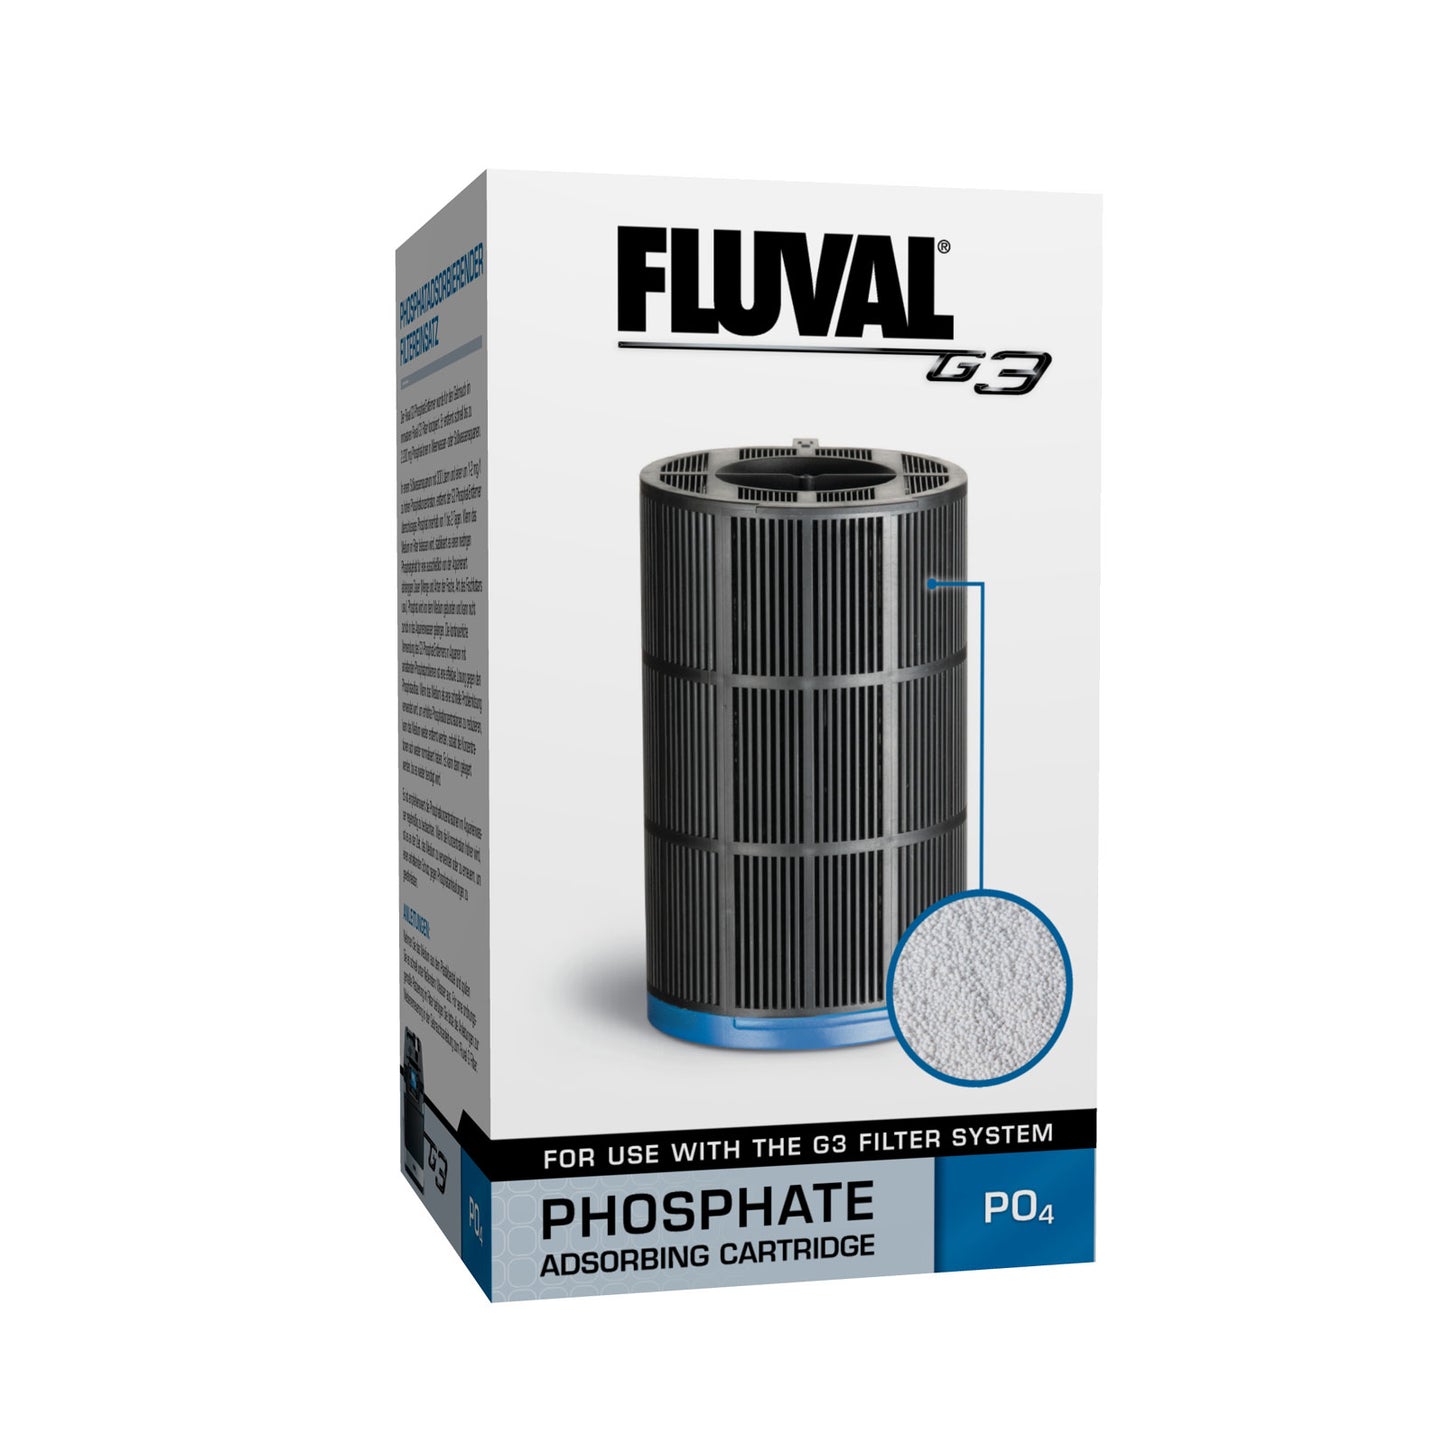 Fluval G3 Phosphate Cartridge